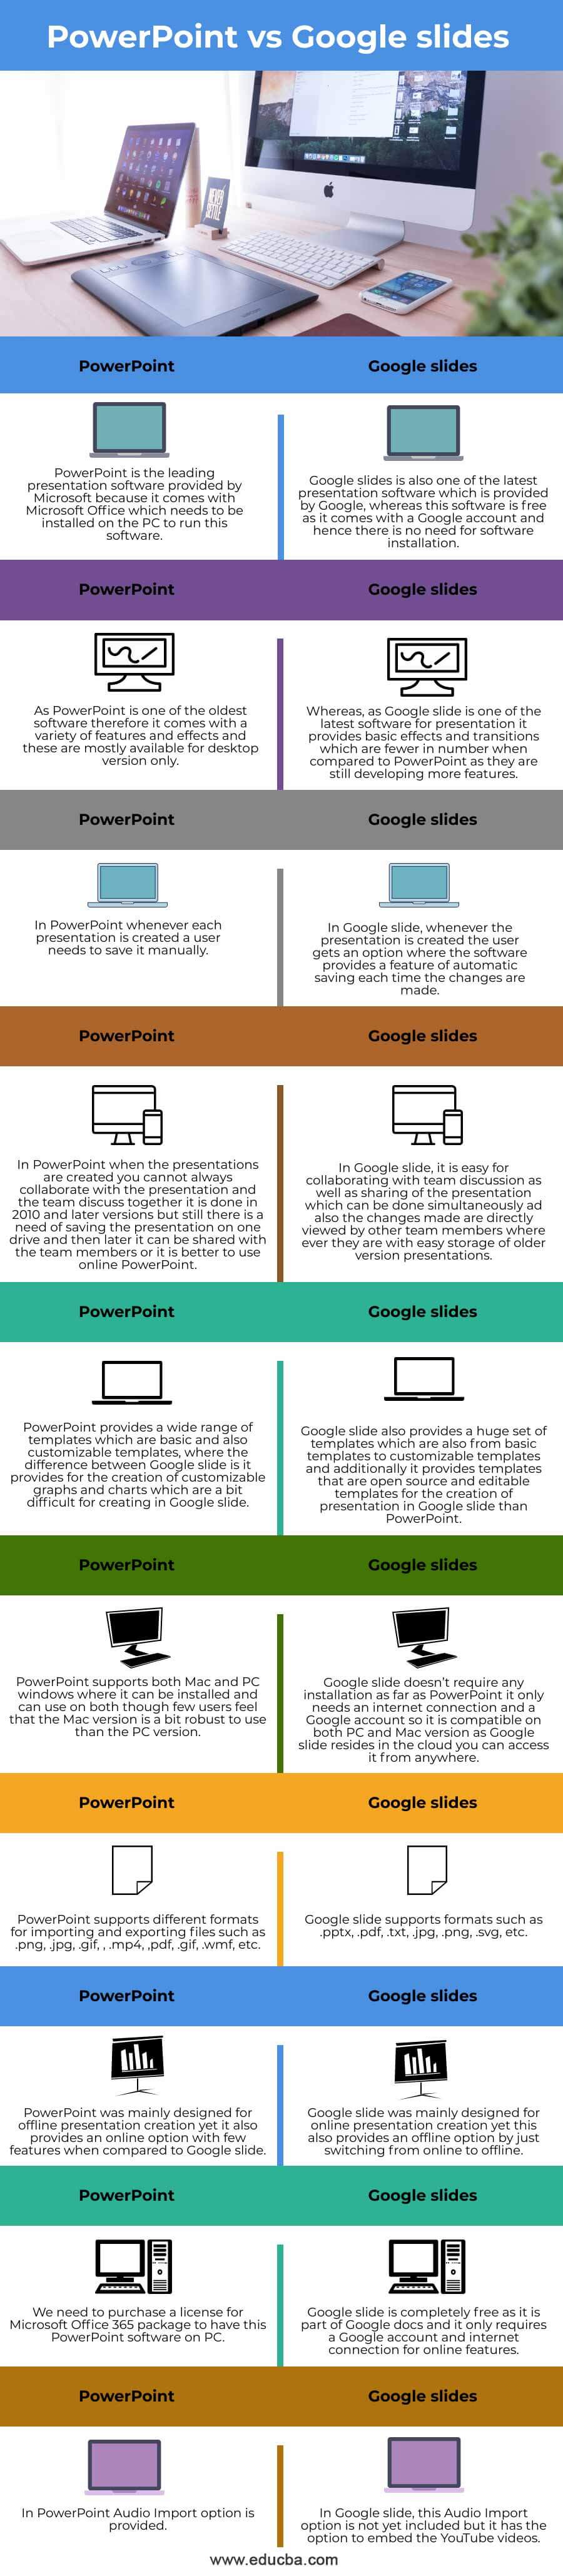 PowerPoint-vs-Google-slides-info